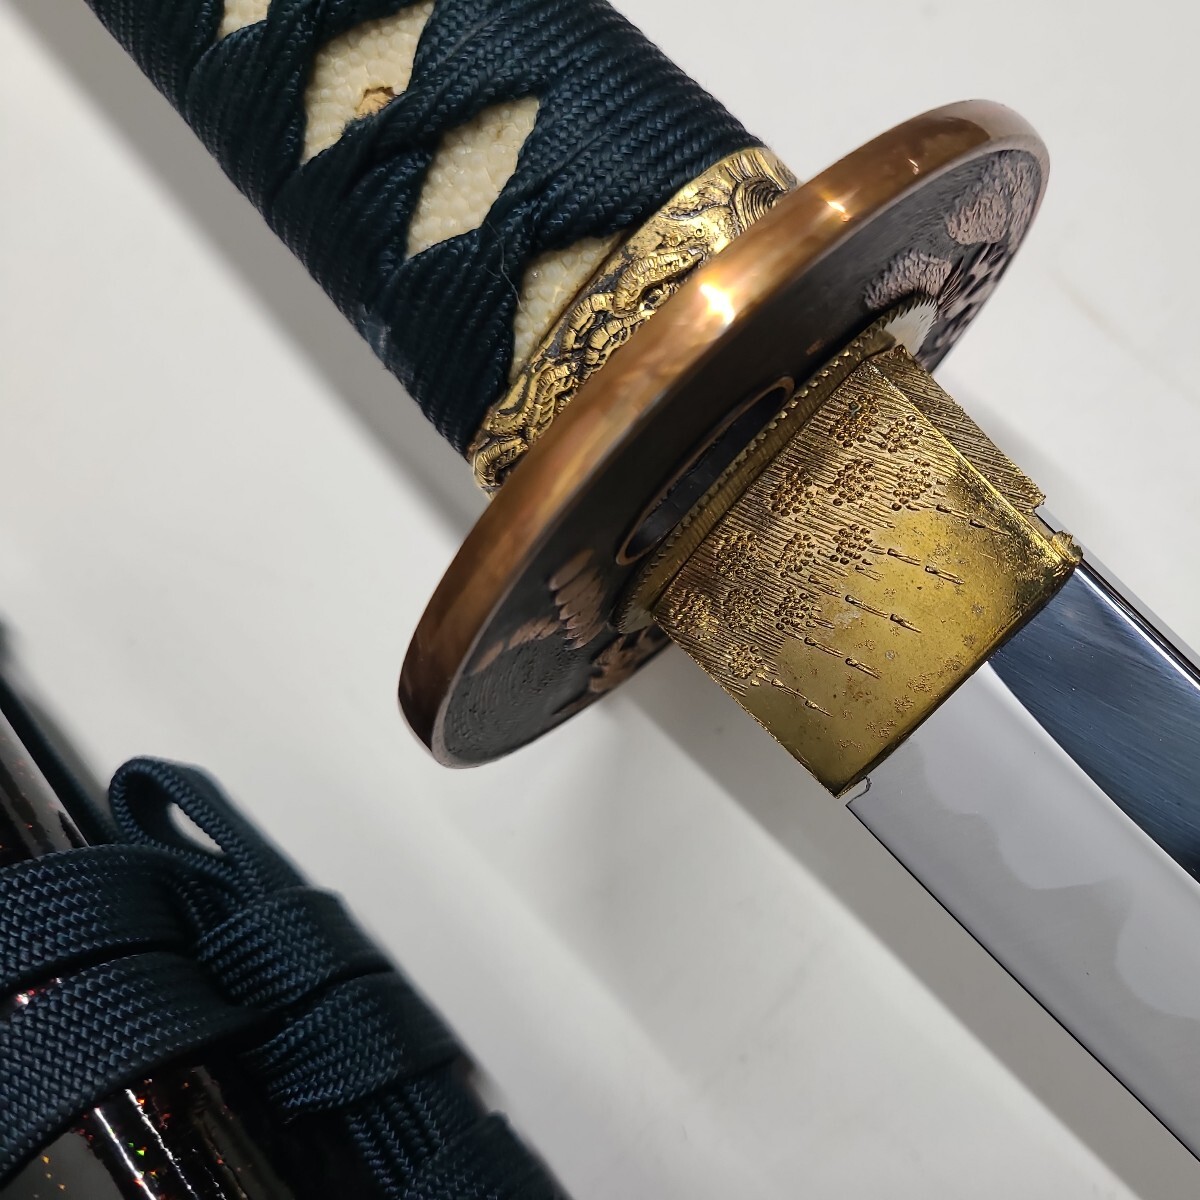  иммитация меча античный японский меч 